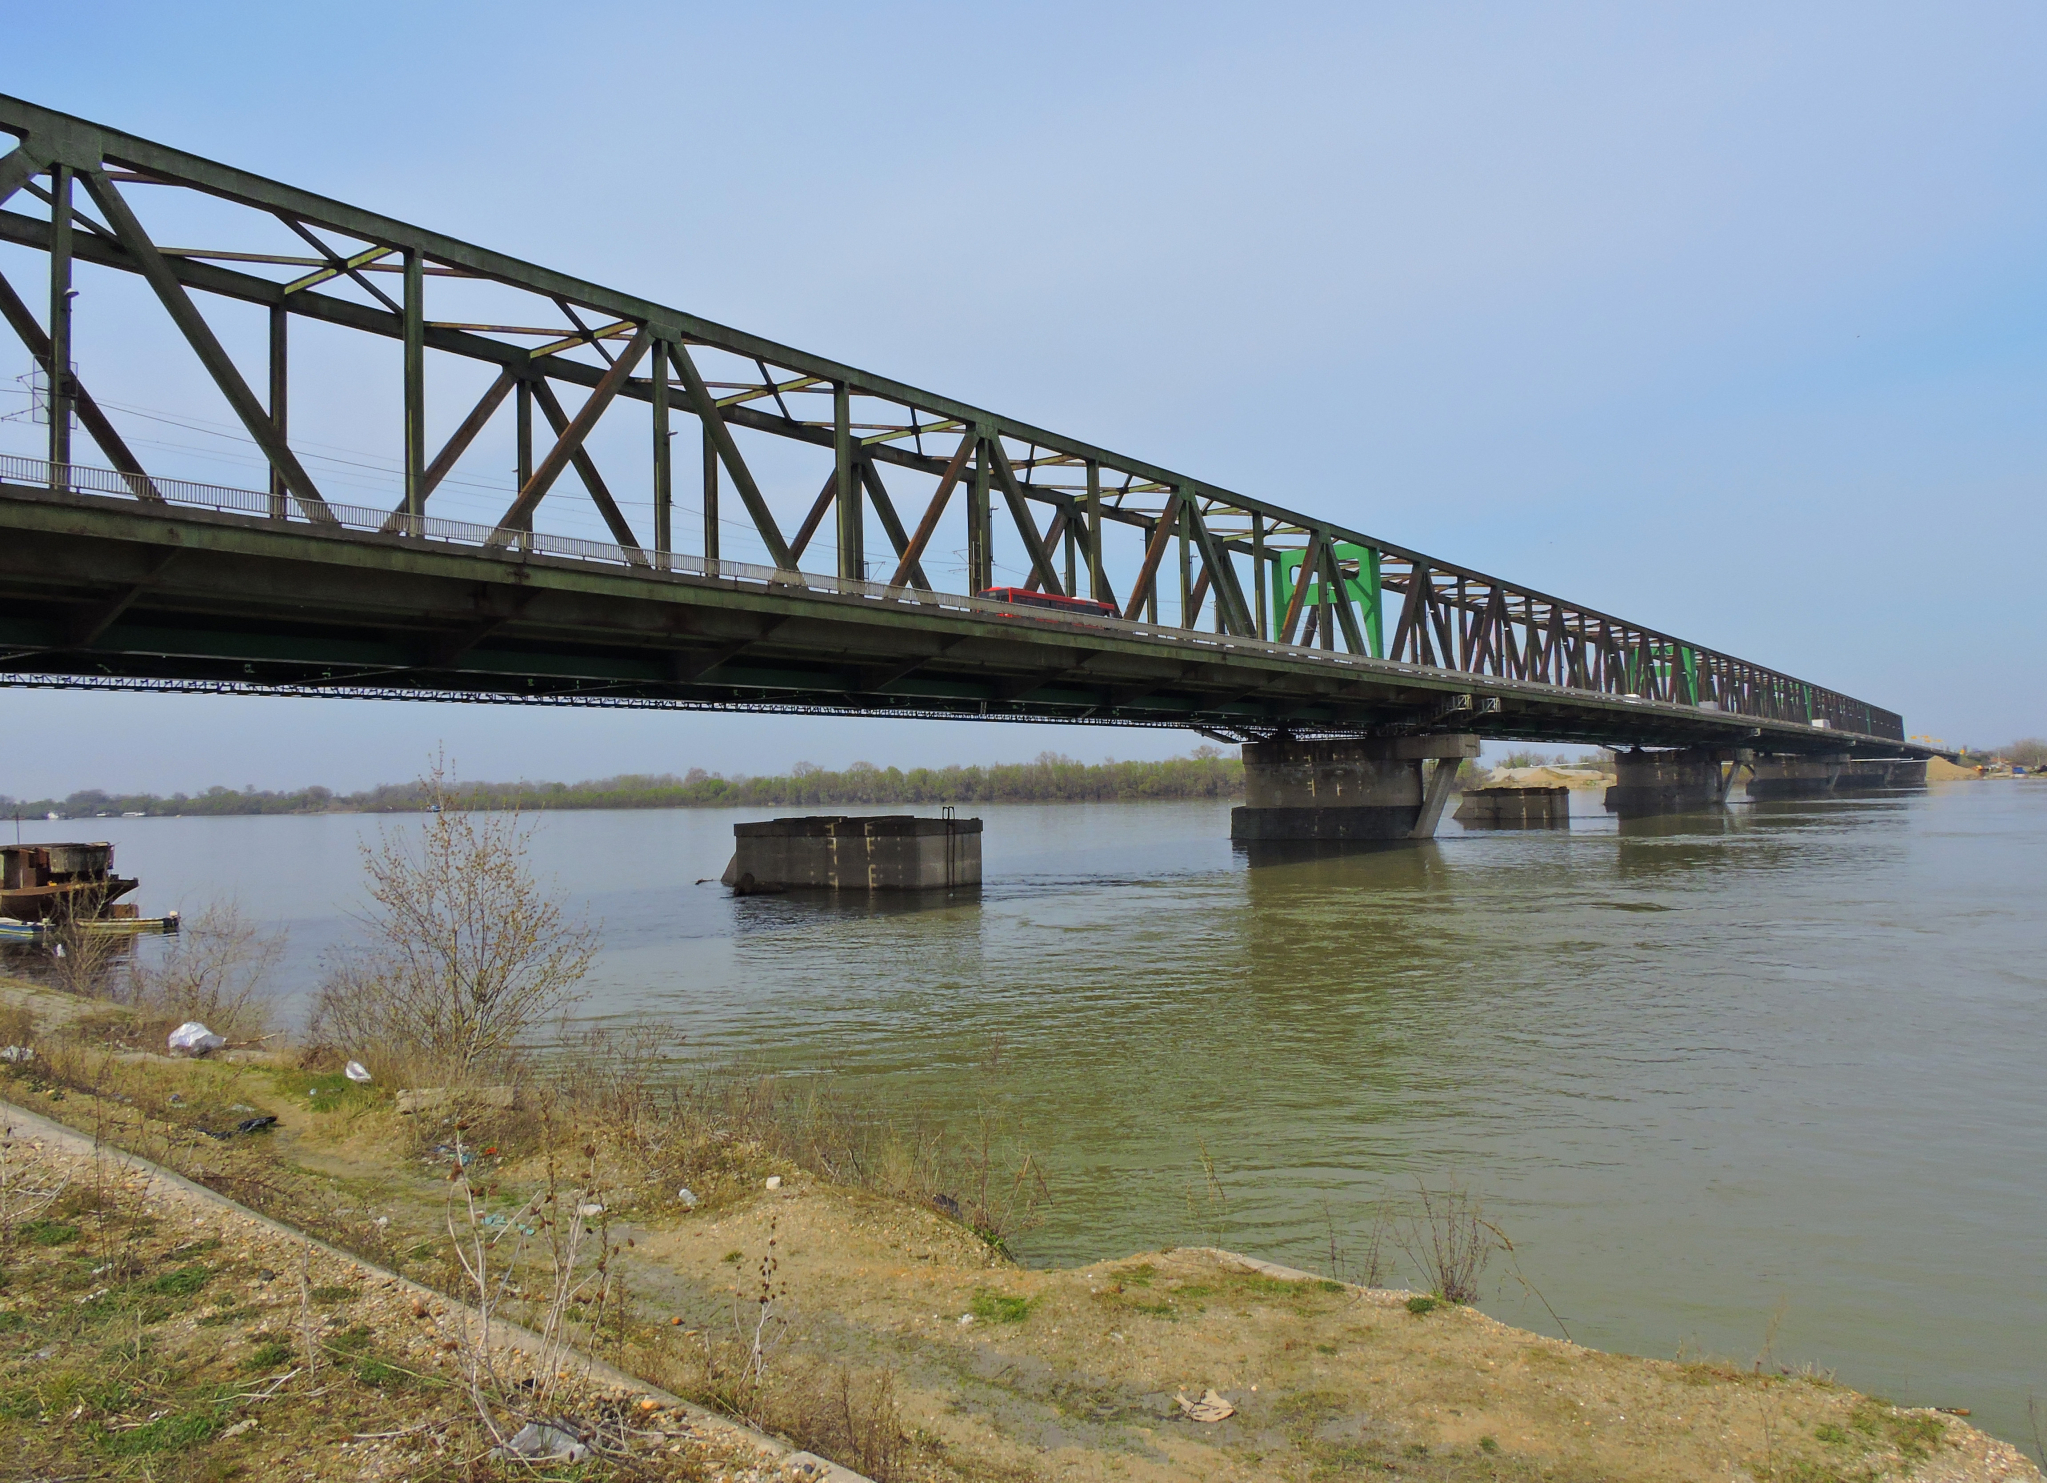 DALI ŽIVOTE DA BI SPASILI PRIJATELJA? Treći dan potrage za trojicom muškaraca na Dunavu kod Pančevačkog mosta